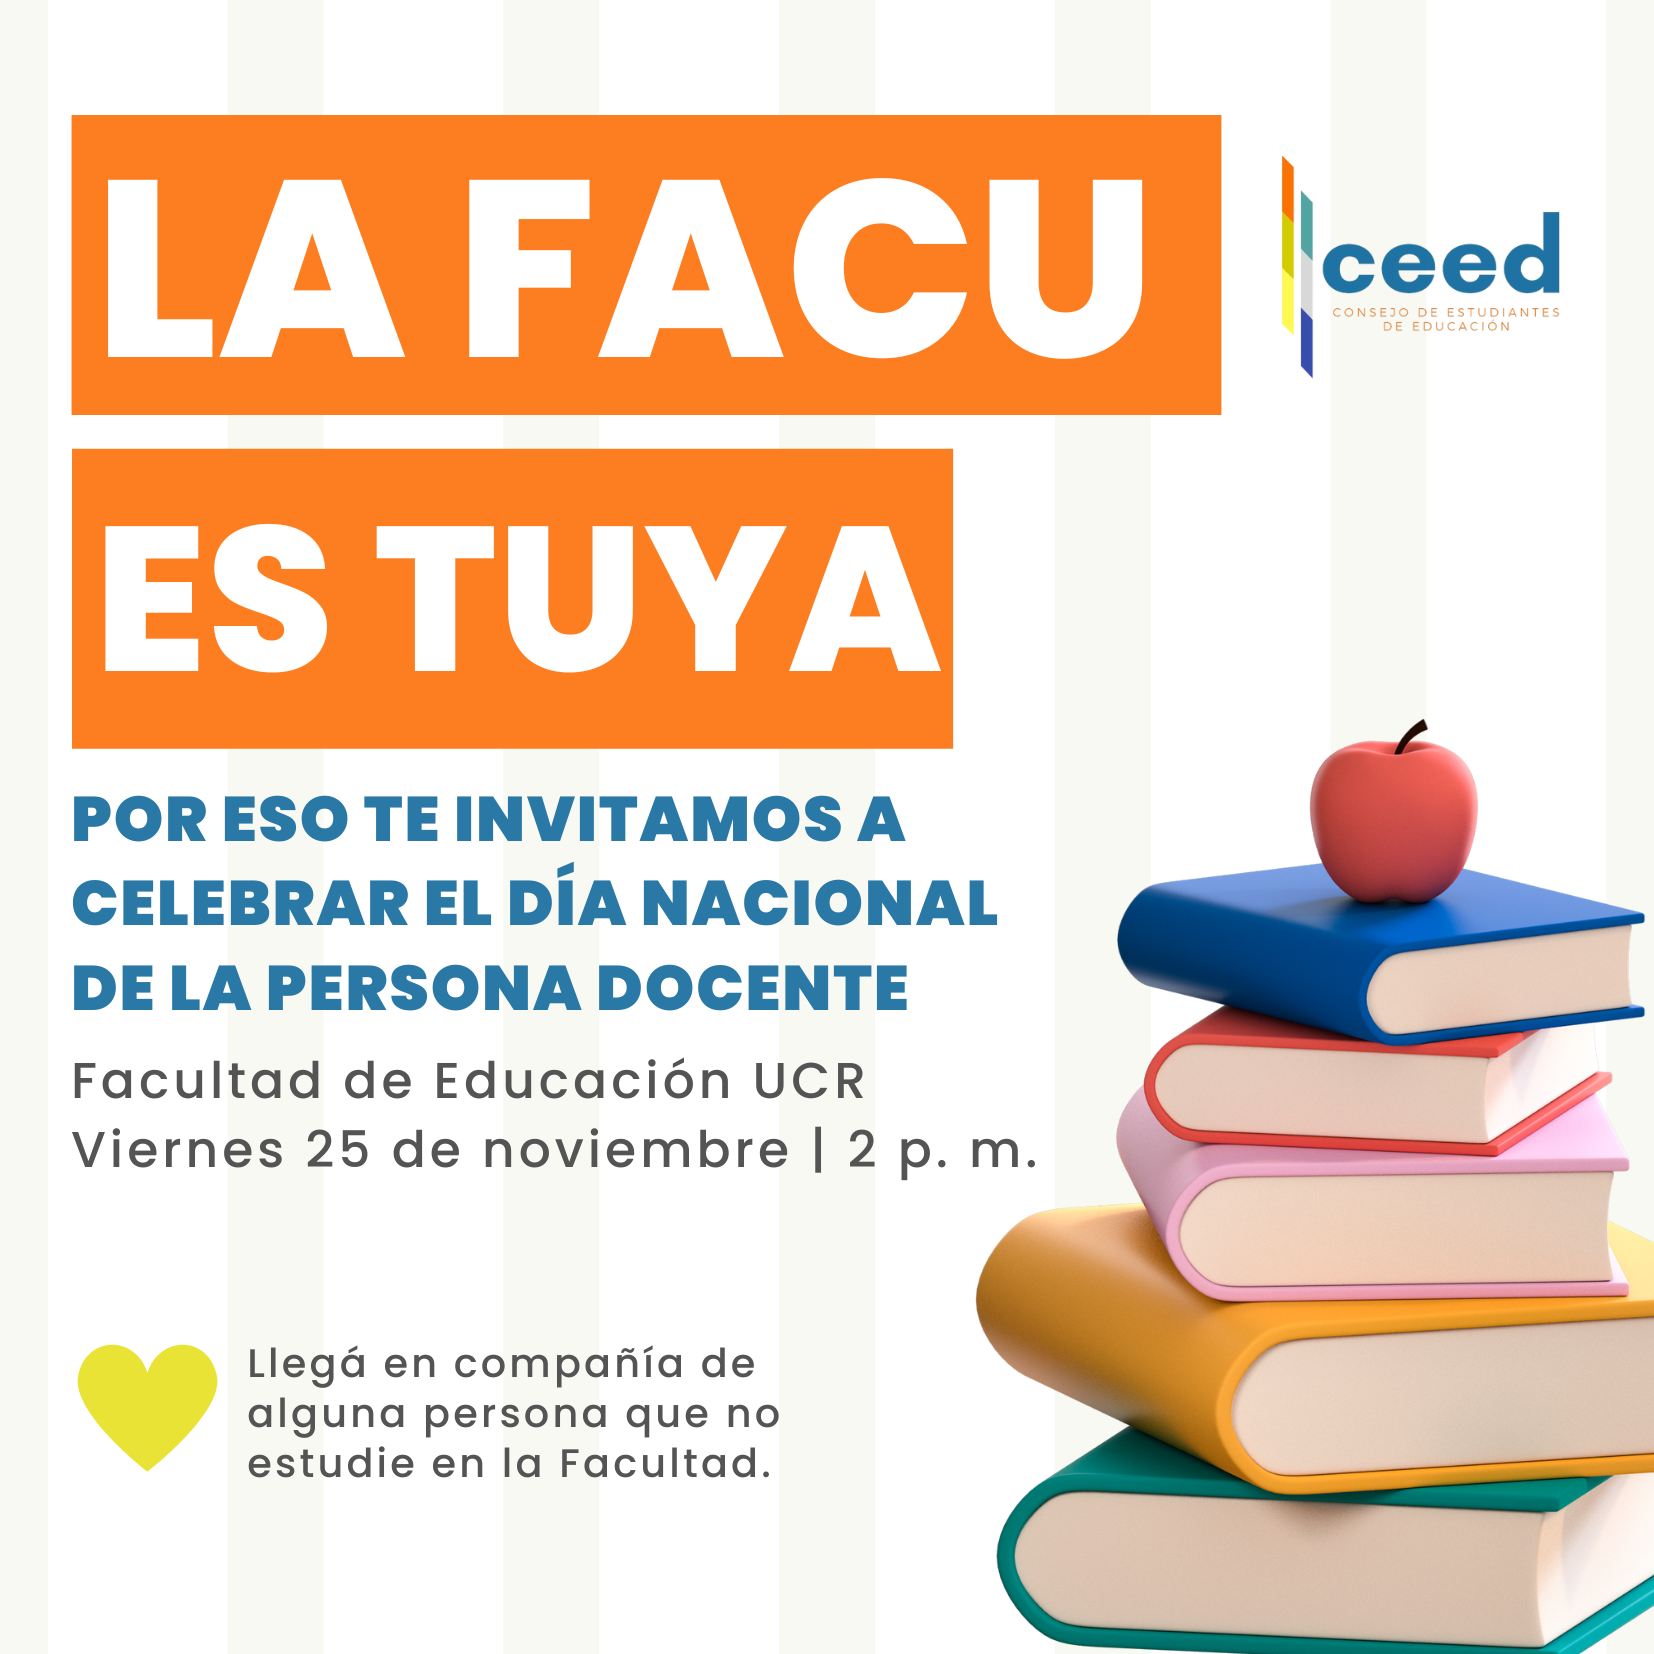 Afiche La Facu es Tuya con información igual a la publicación.